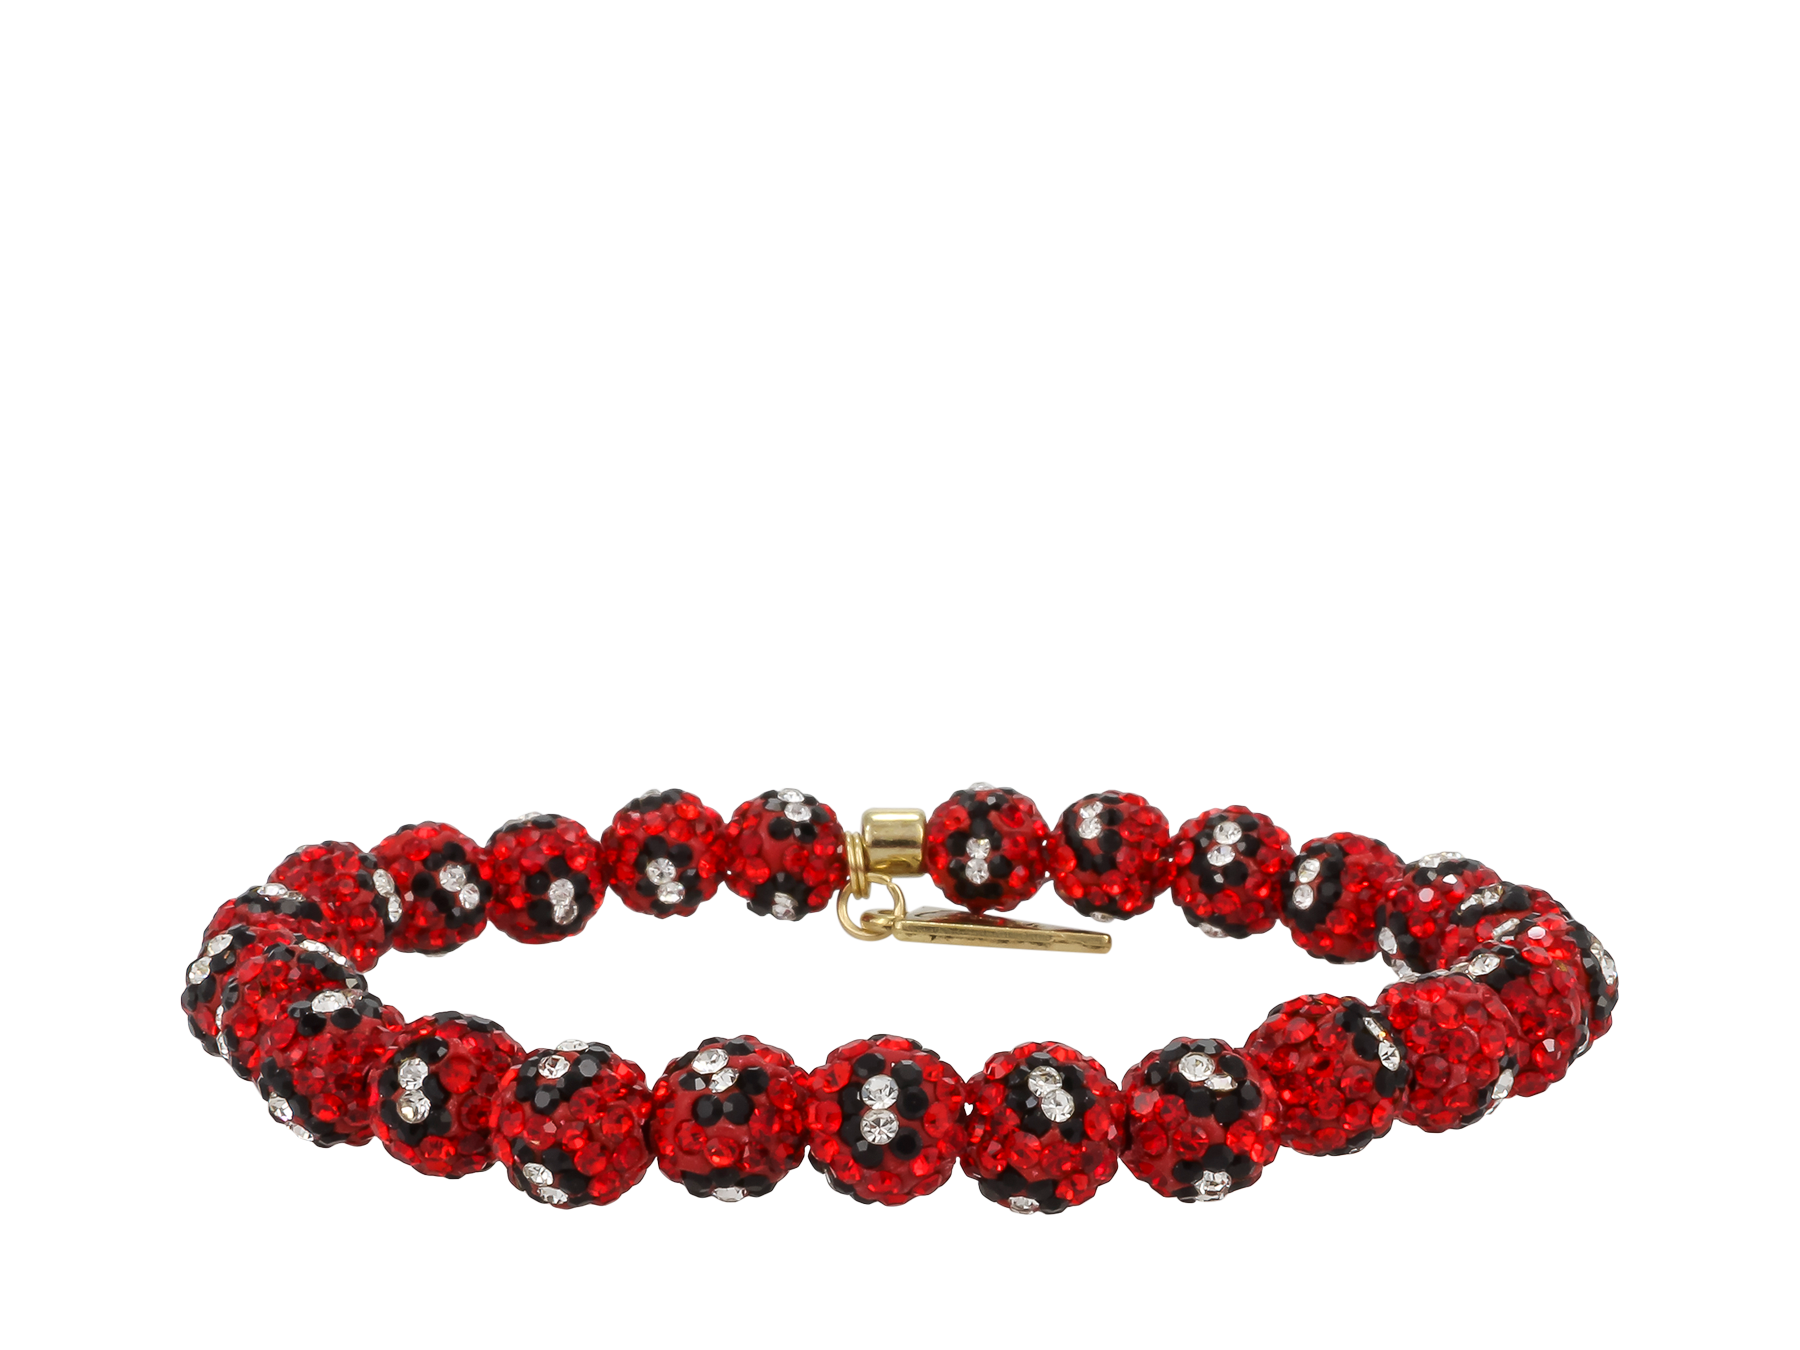 The Oniriq | Red lava shamballa bracelet